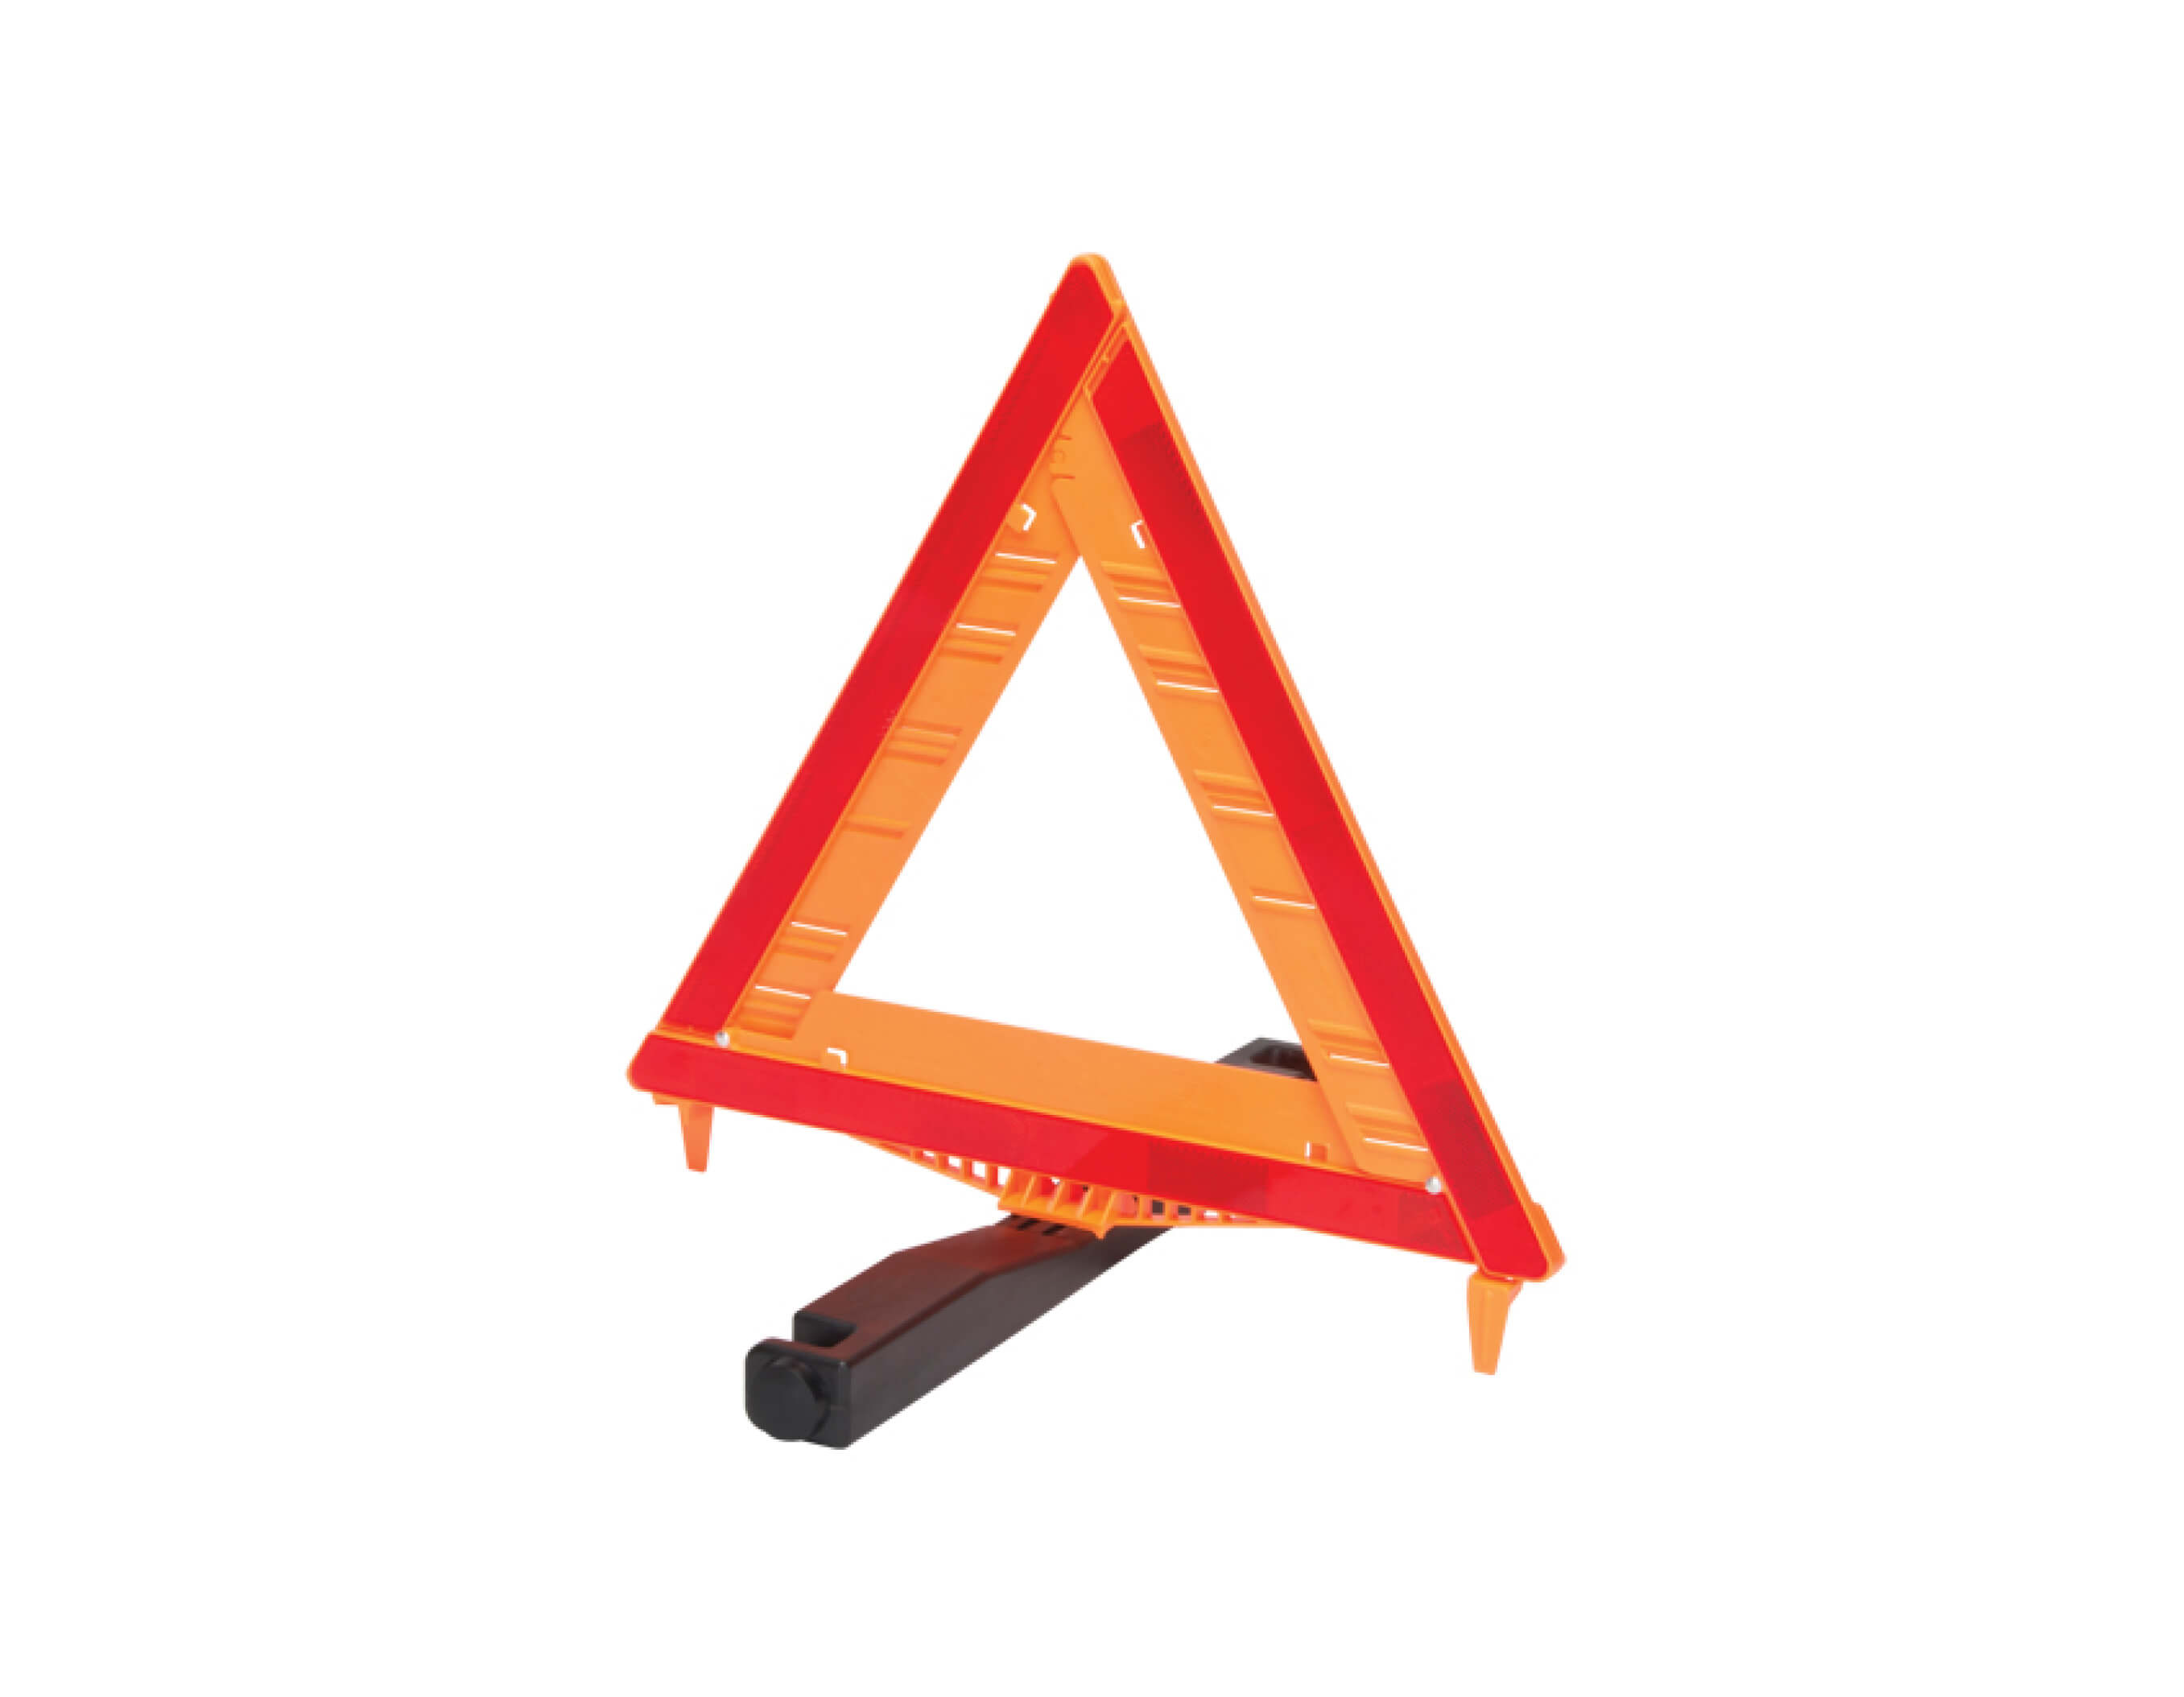 Réflecteur Triangulaire De Sécurité Image stock - Image du rouge,  r3fléchissant: 40899213